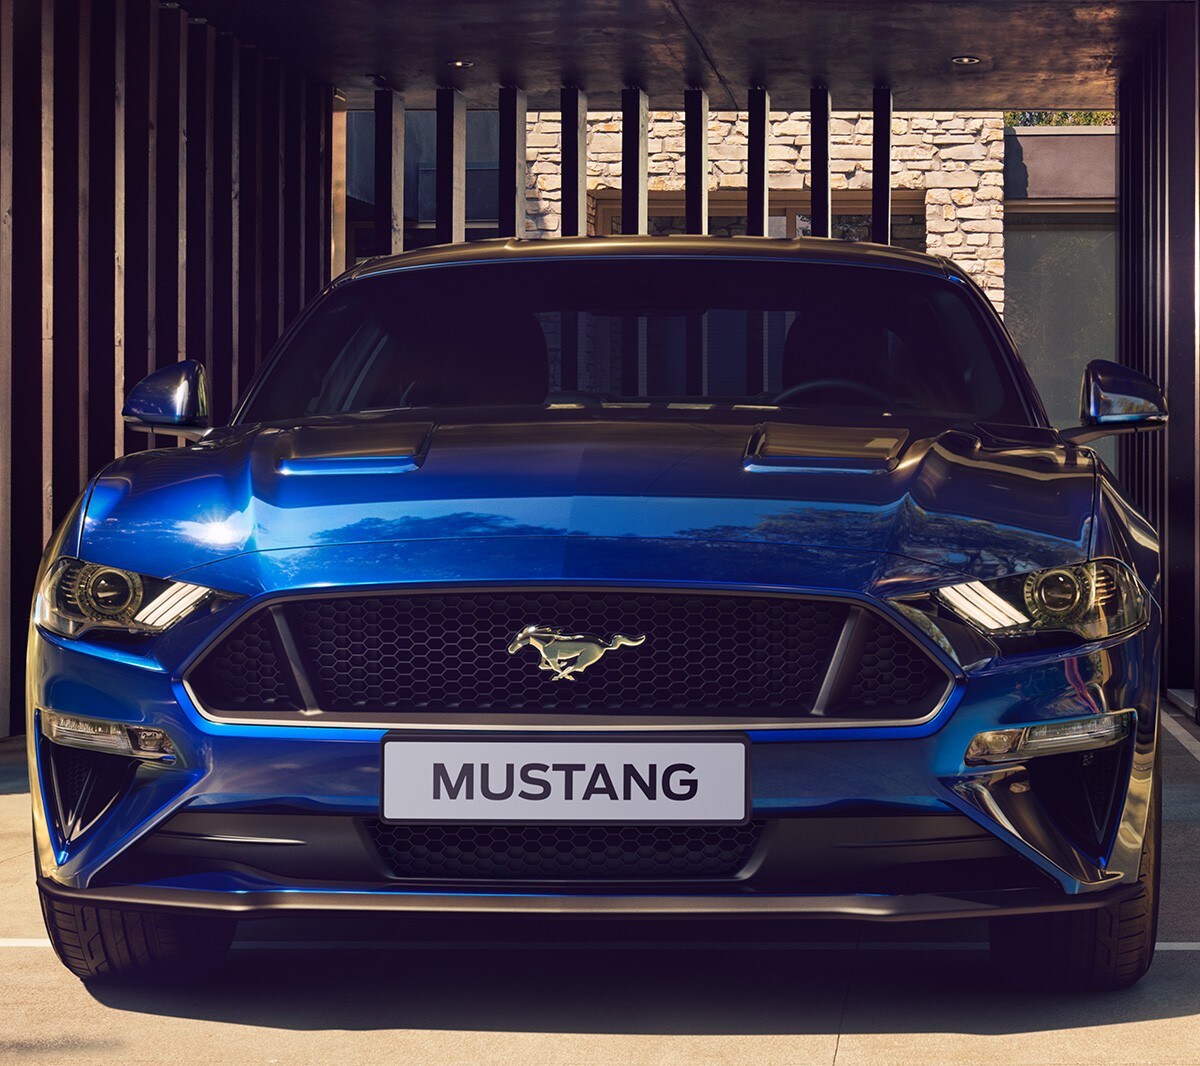 Ford Mustang in Blau. Frontansicht, parkend vor einem Metalltor